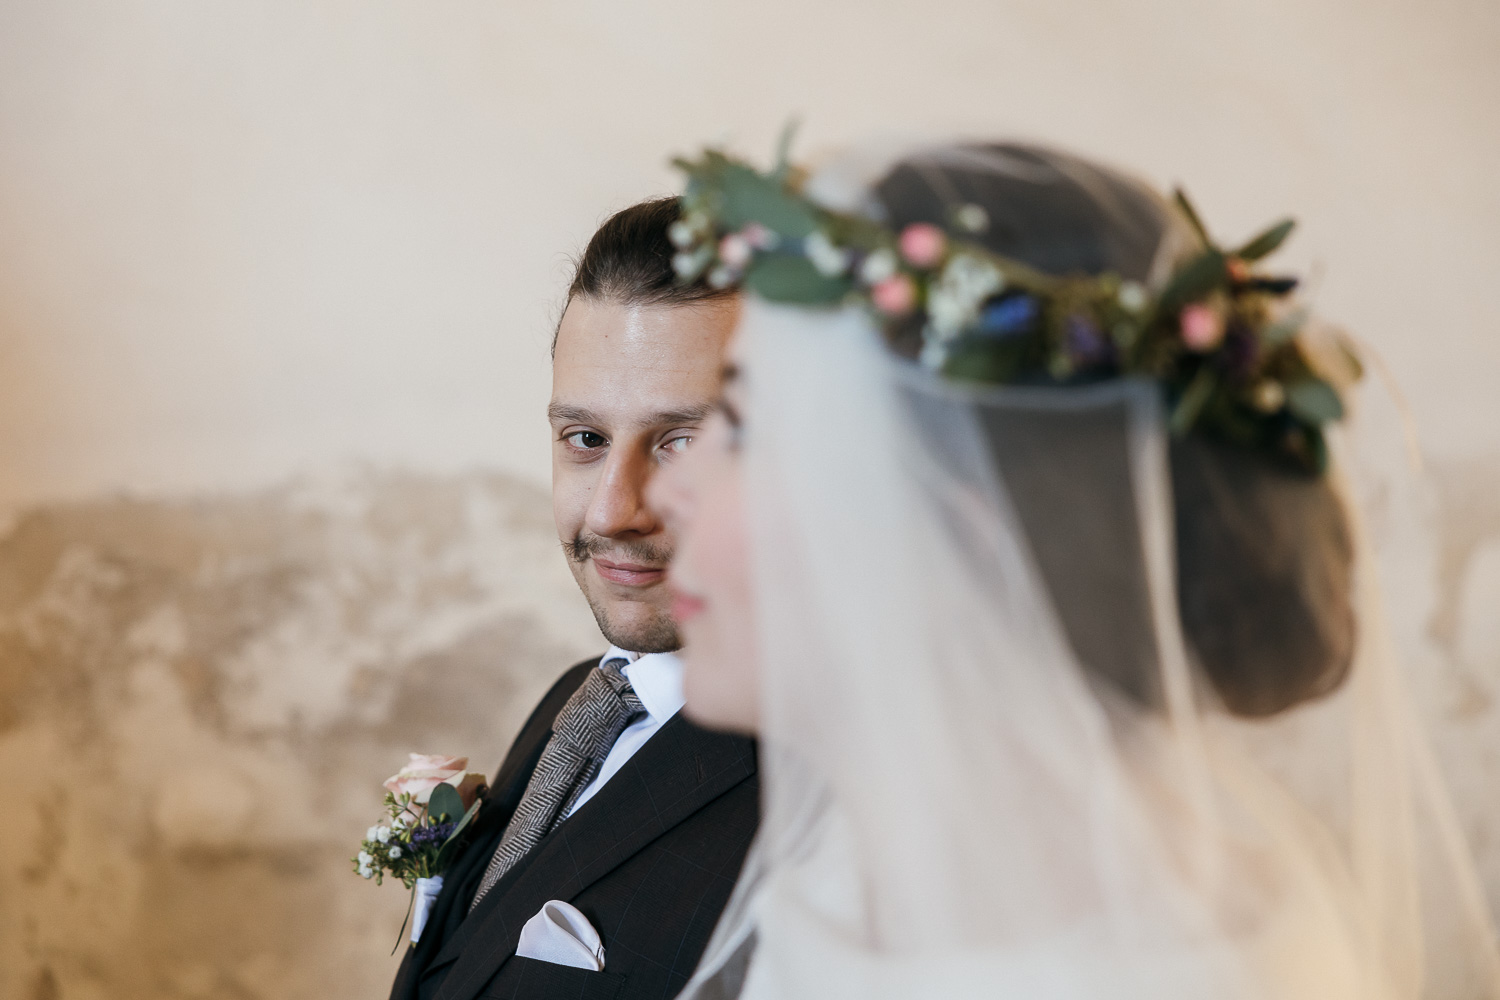 Bräutigam und Braut im Profil in der Unschärfe